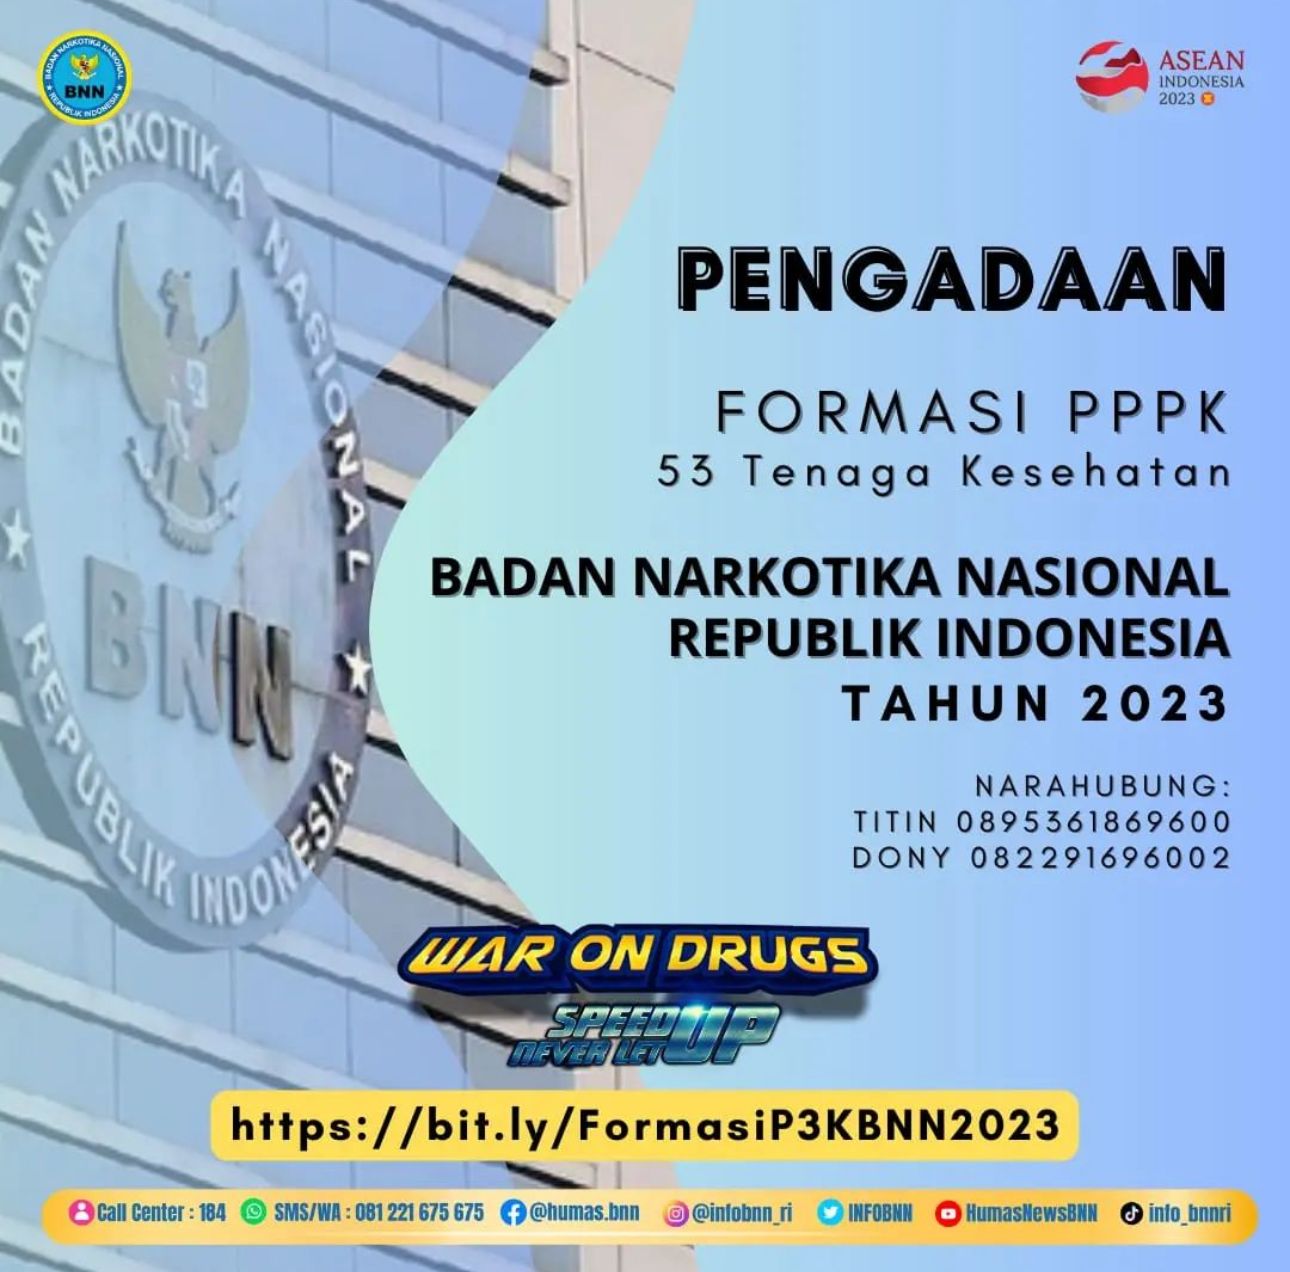 Gaji Tertinggi Rp11 Juta, Badan Narkotika Nasional Buka 53 Formasi PPPK 2023, Usia Paling Maksimal 53 Tahun 